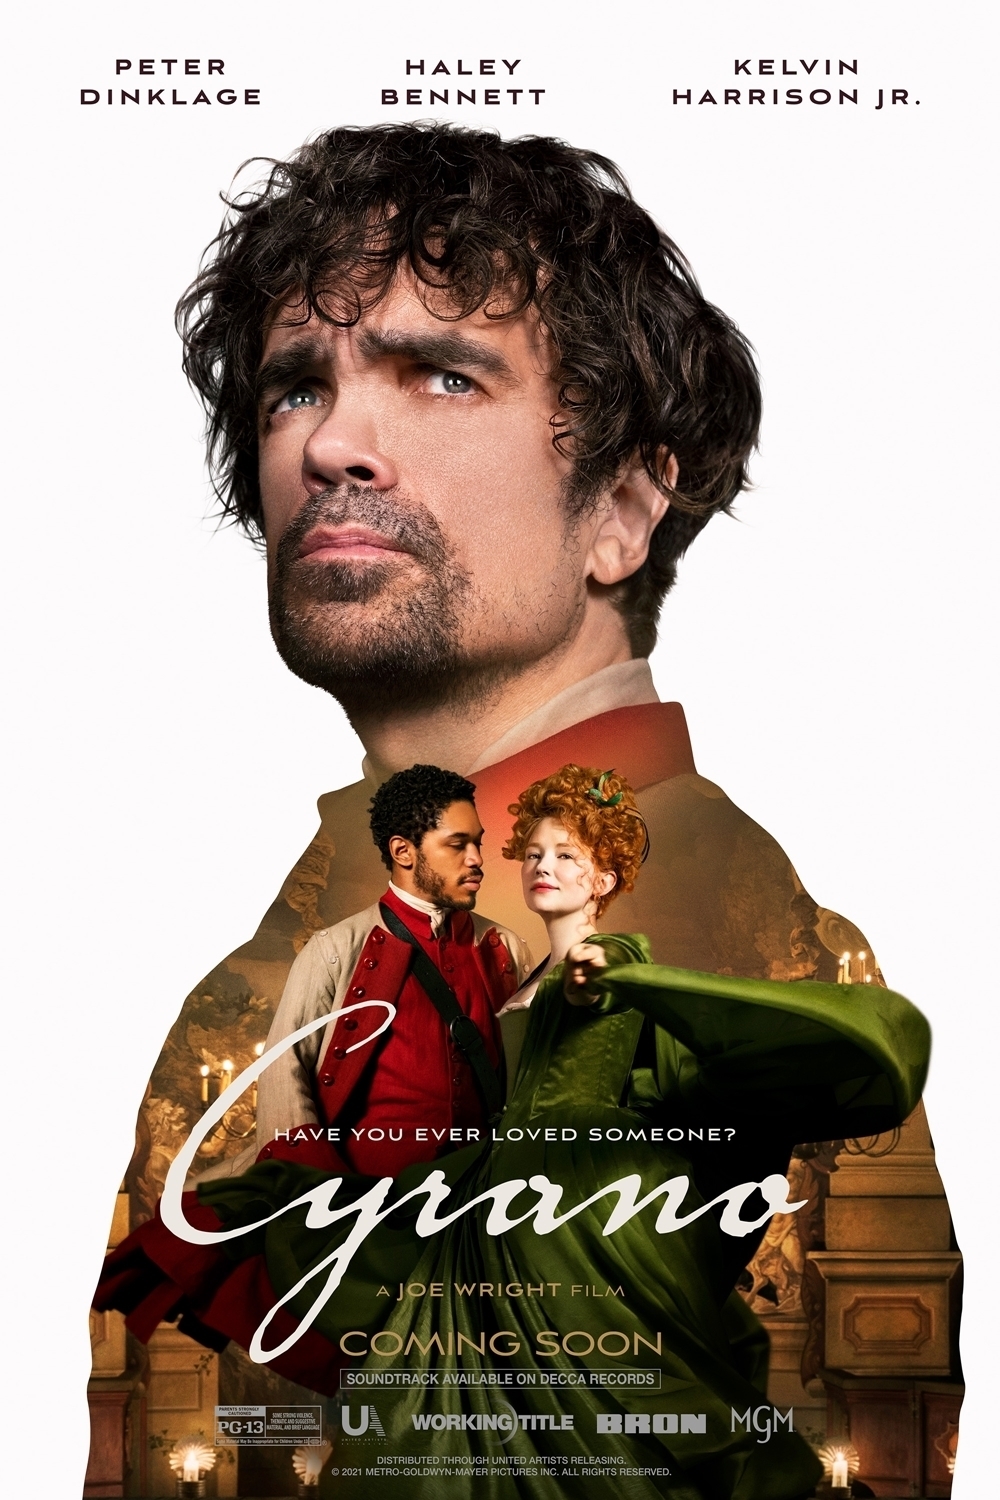 Still of Cyrano